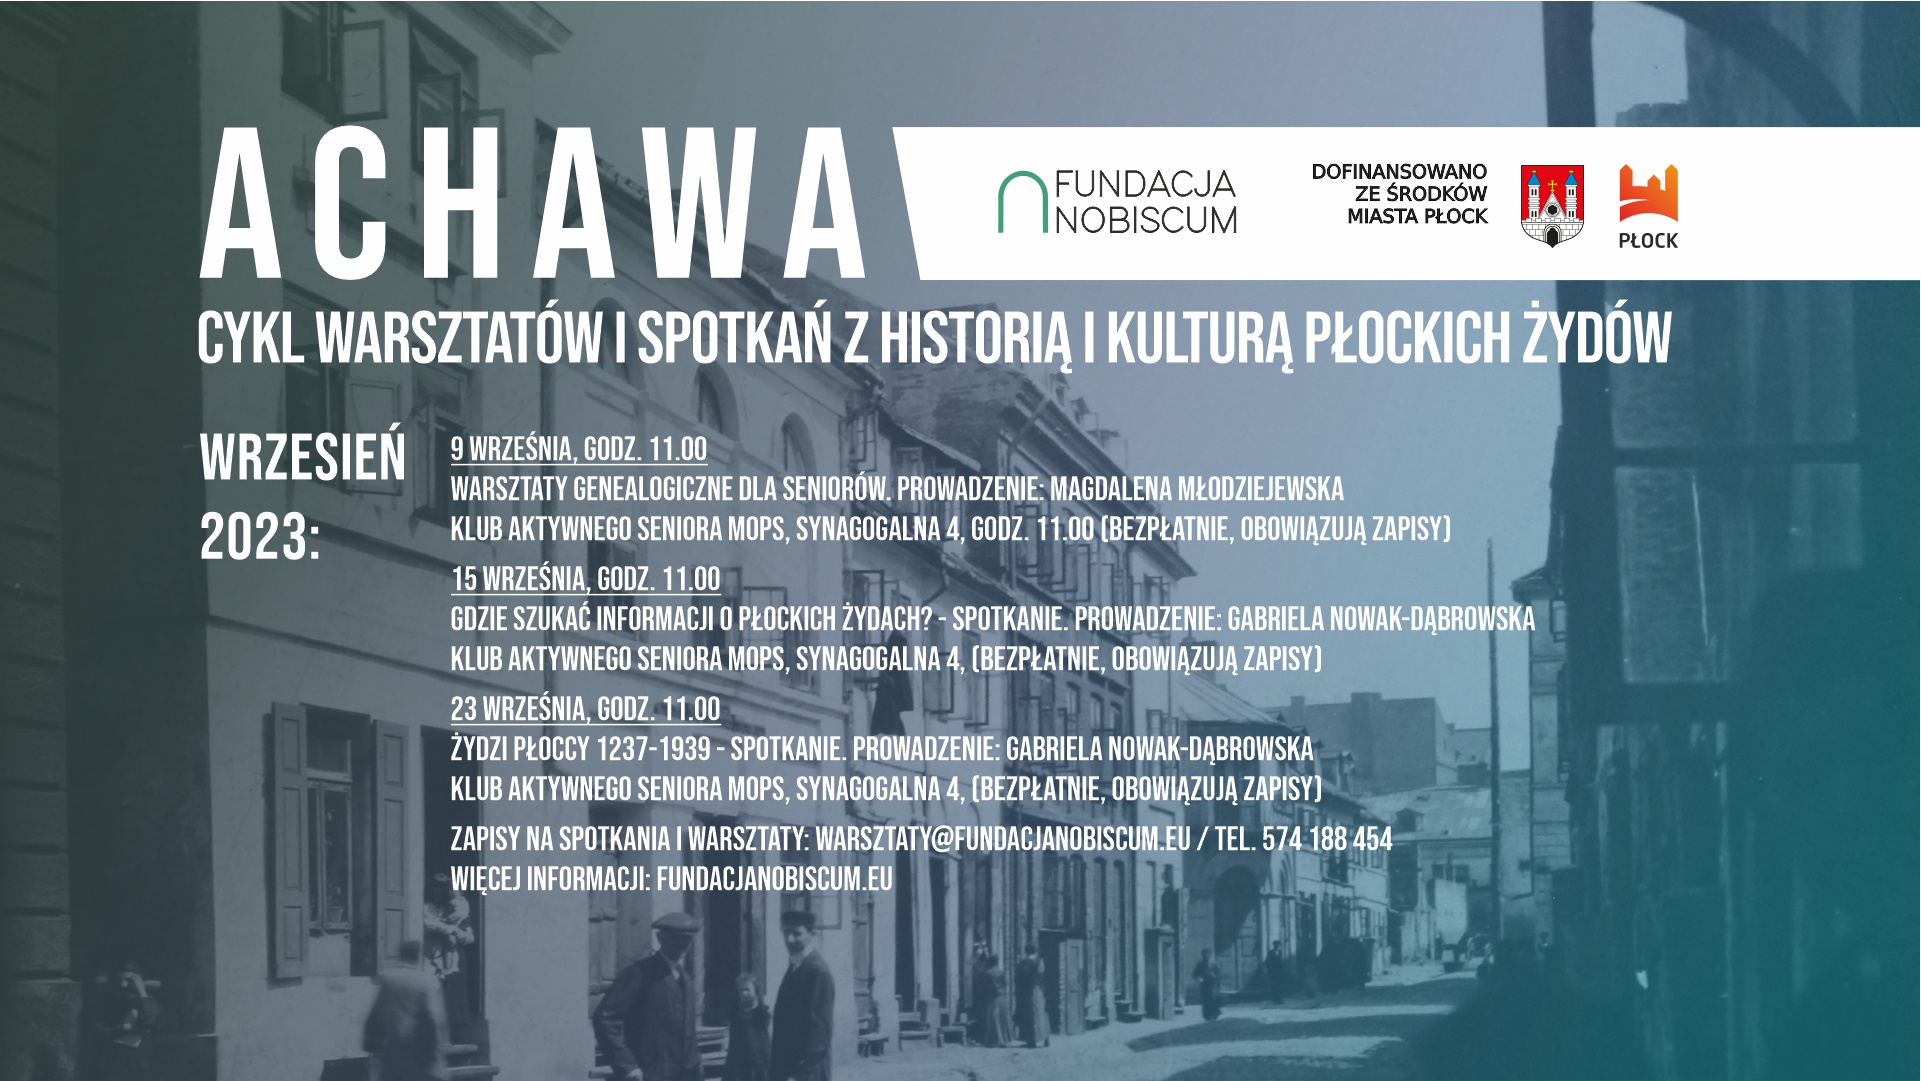 Achawa: warsztaty genealogiczne i spotkania z historią płockich Żydów dla seniorów we wrześniu